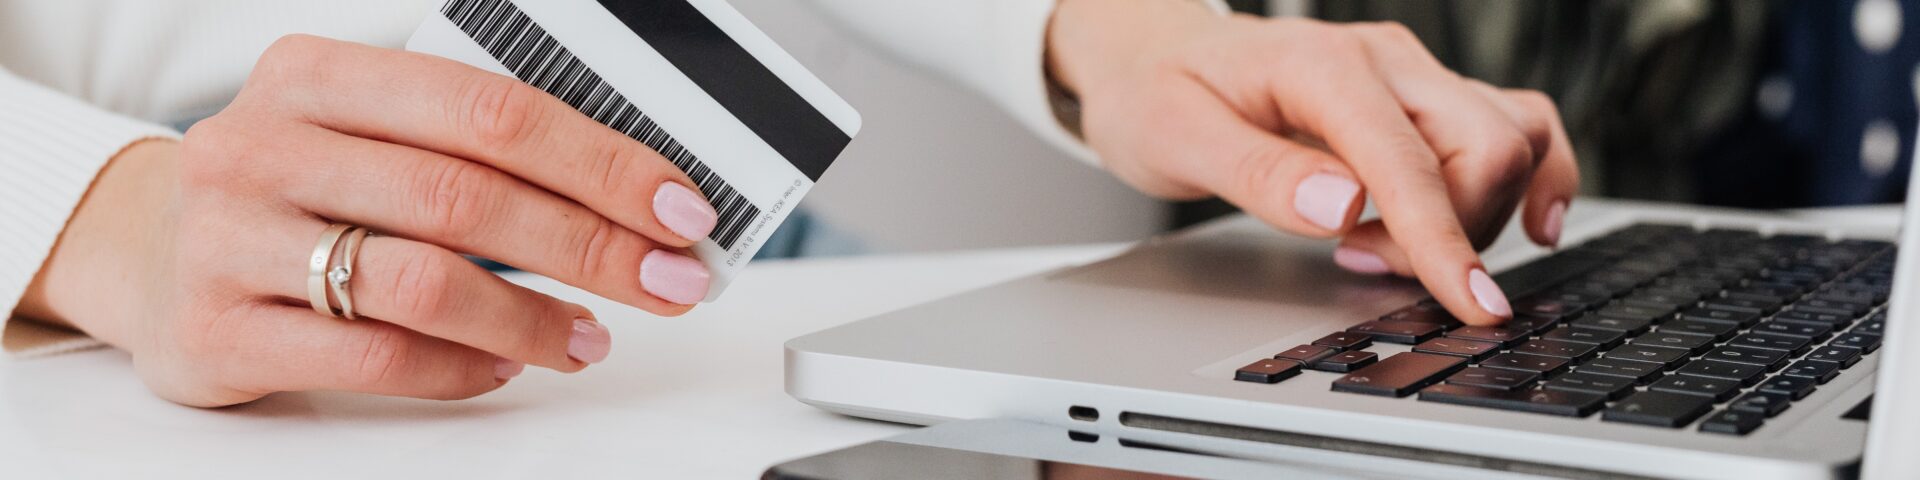 vrouw doet online betaling op een laptop met een bankpas als afbeelding bij een blog over los niet teveel hypotheek af na je pensioen